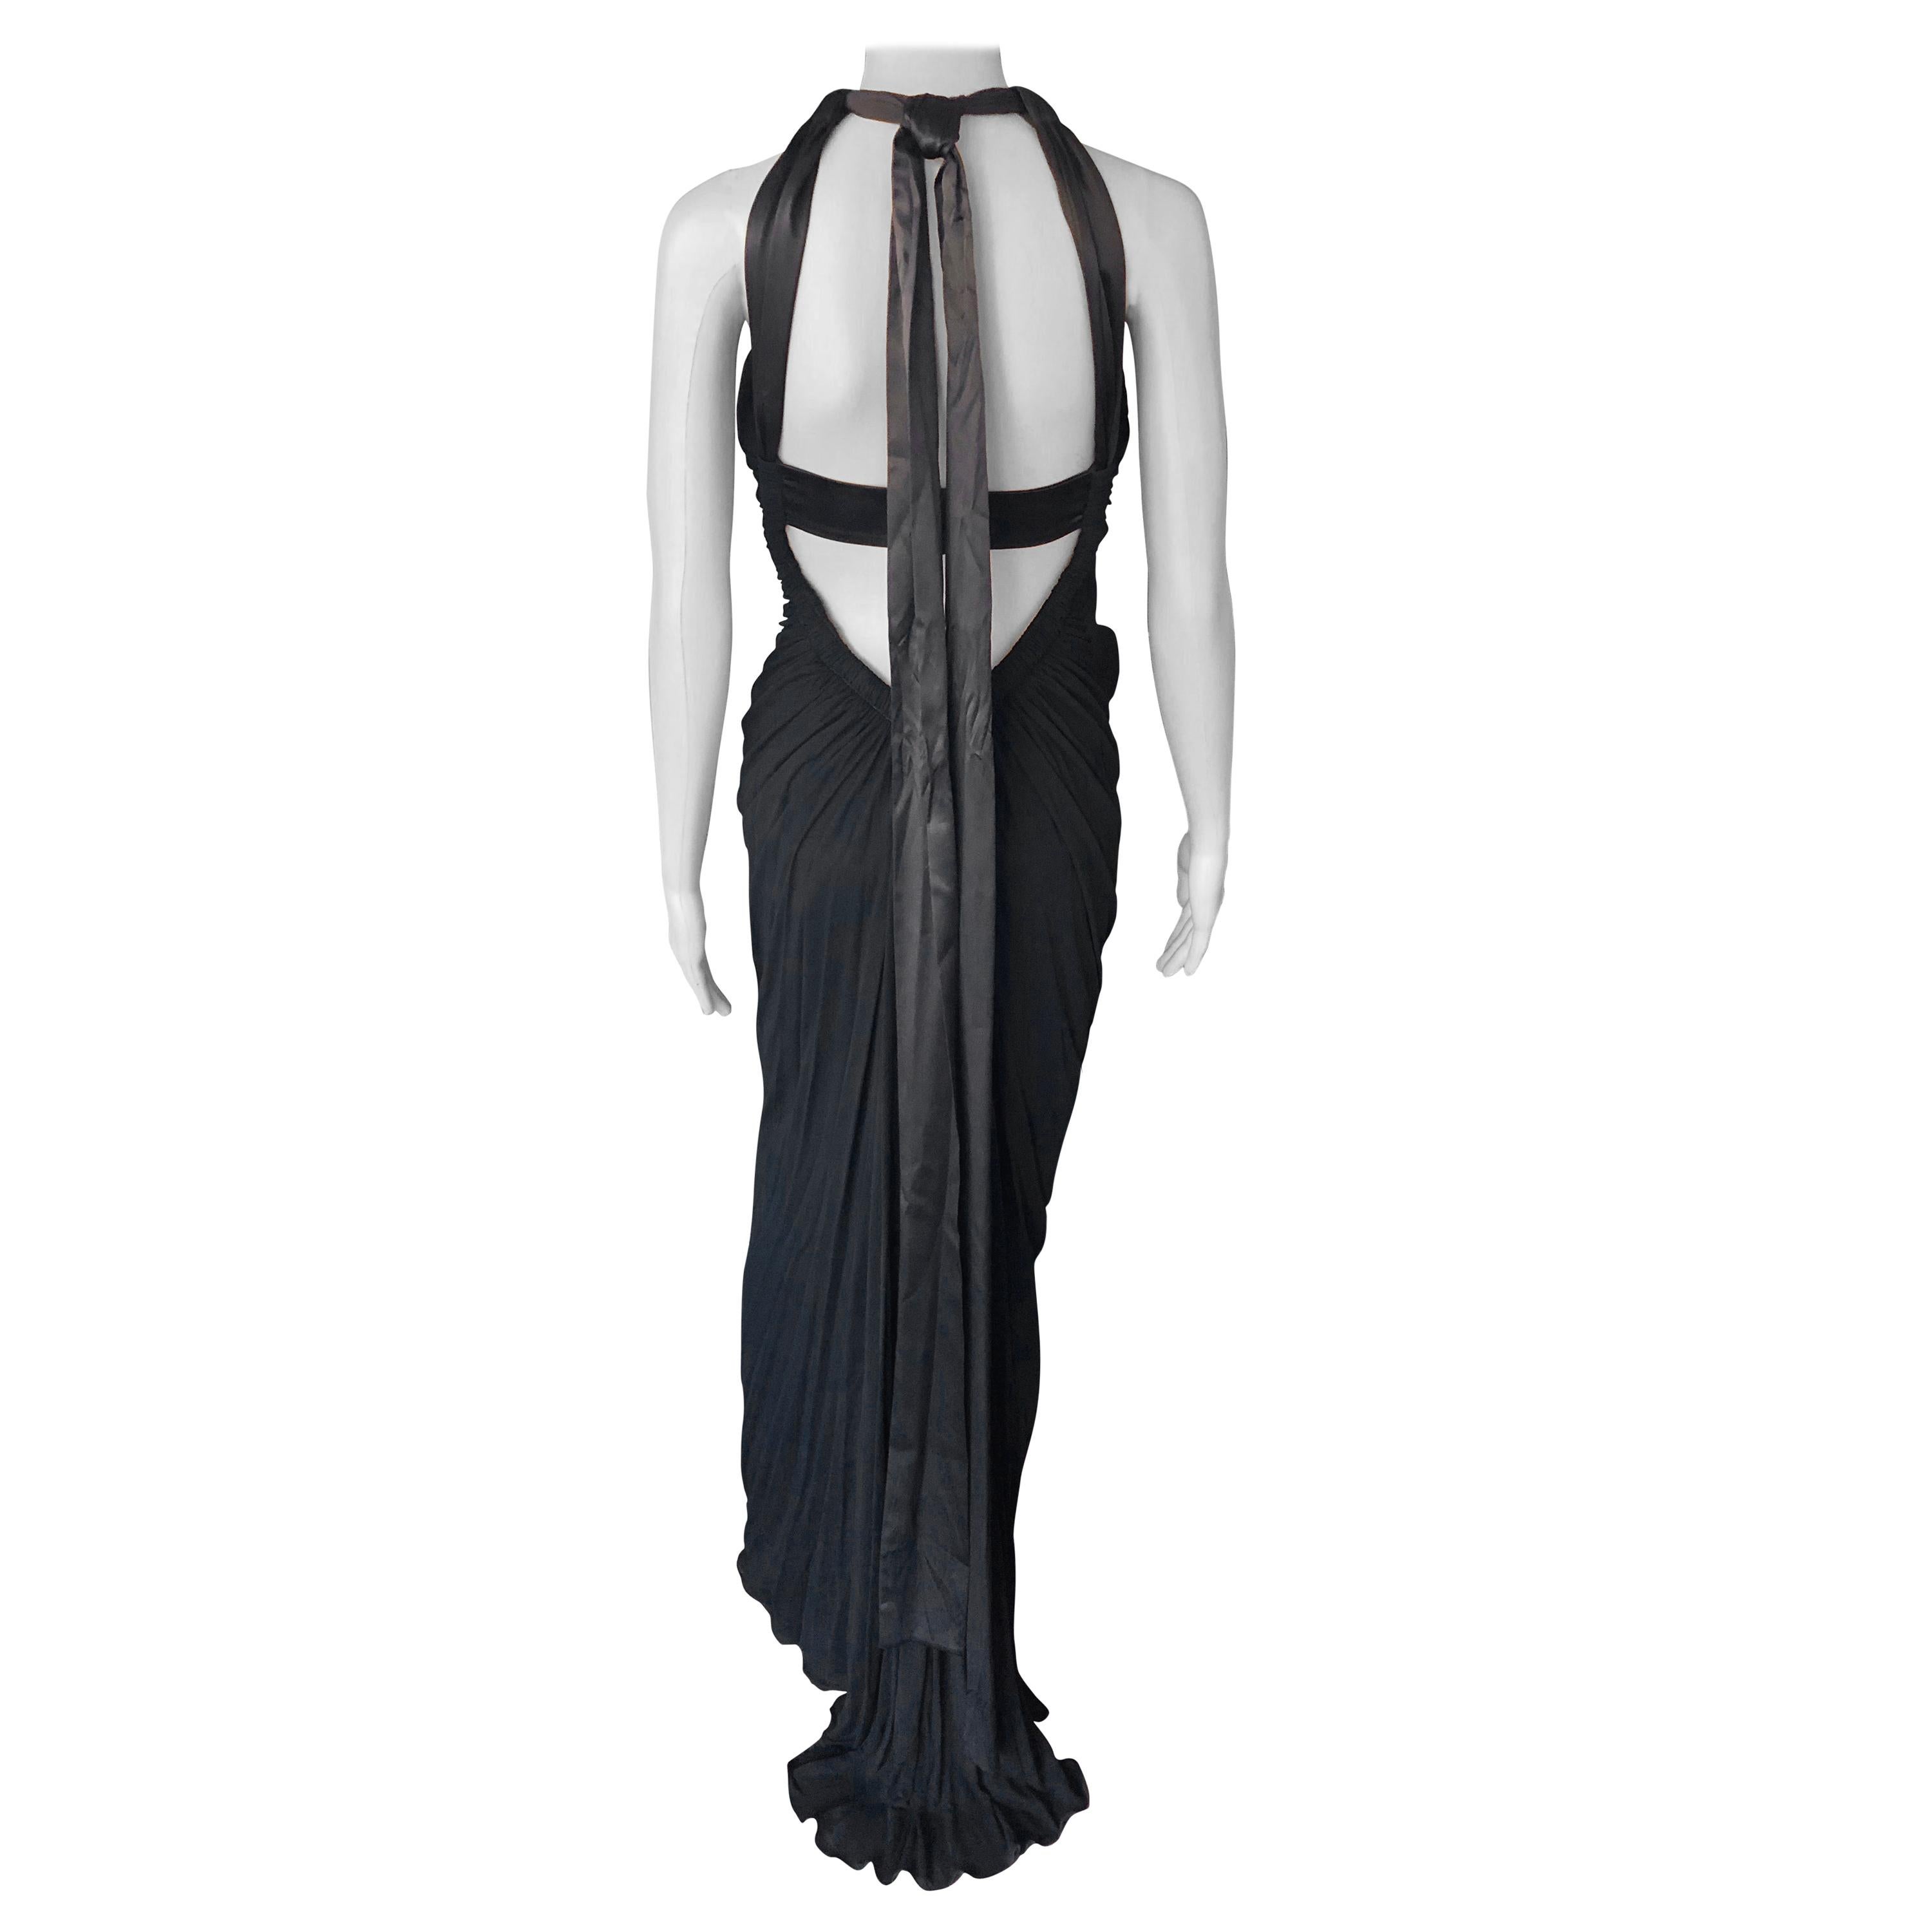 Dolce & Gabbana c.2000 Halter Cutout Open Back Black Evening Dress Gown